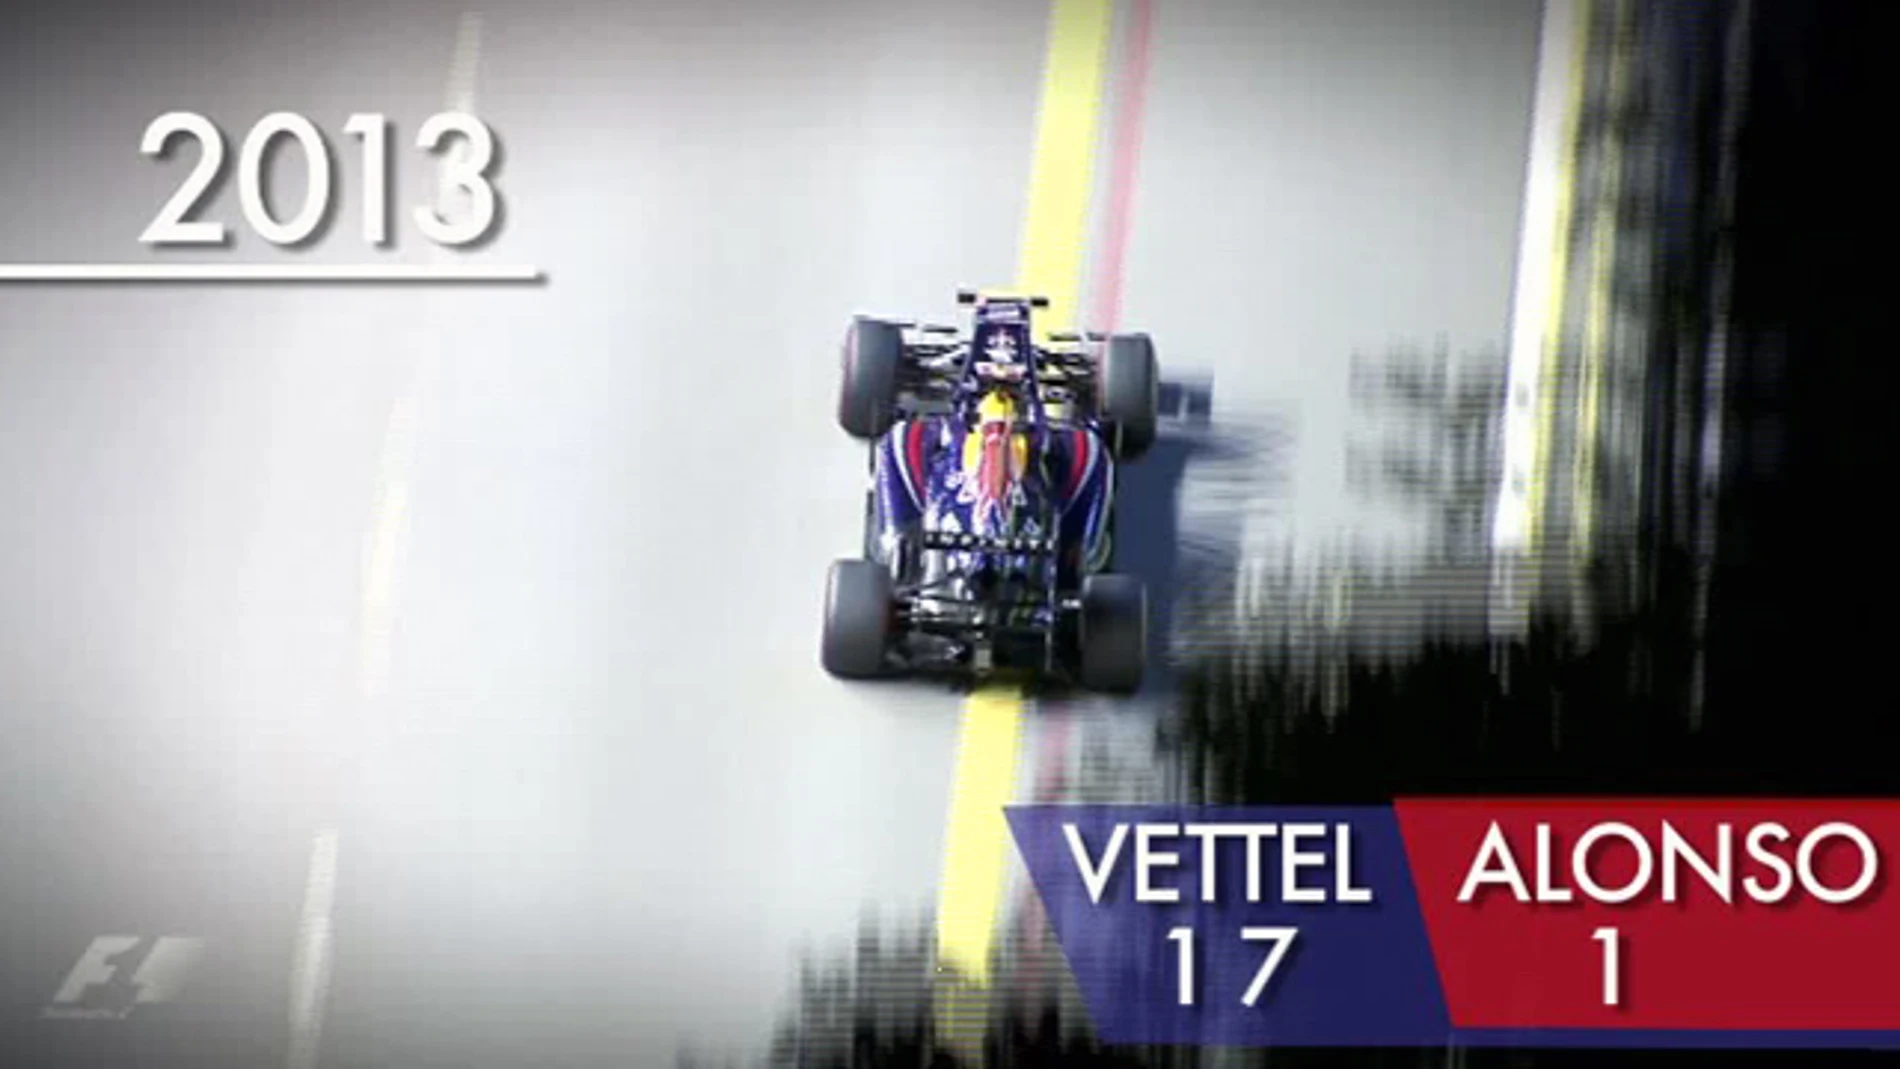 Ventaja de Vettel con Alonso en clasificación en 2013